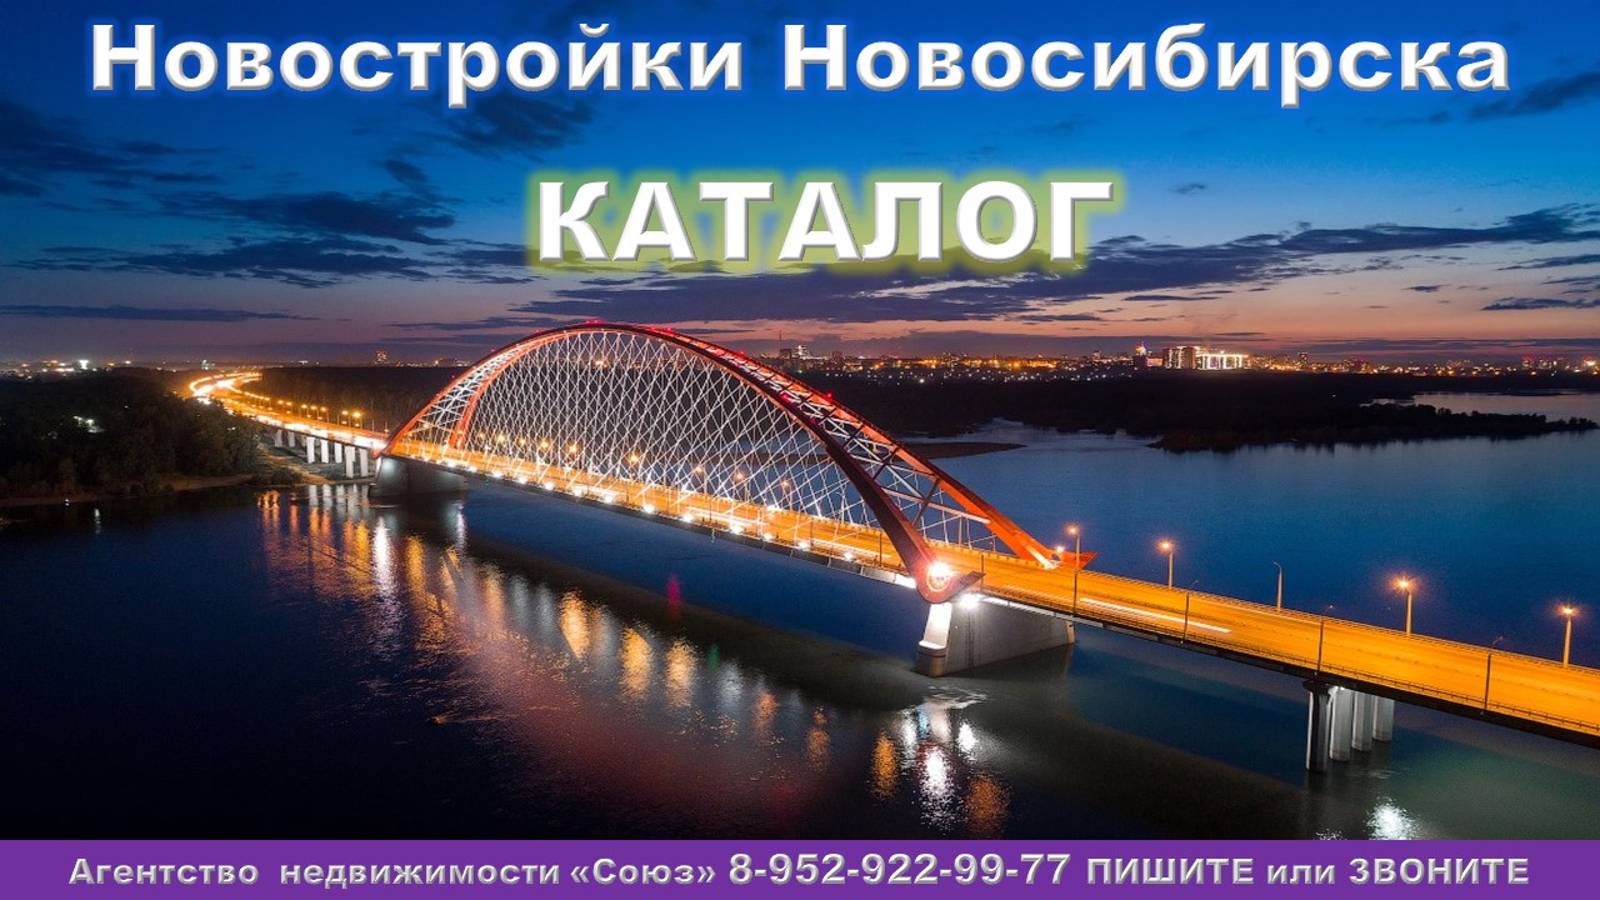 Каталог новостроек Новосибирска